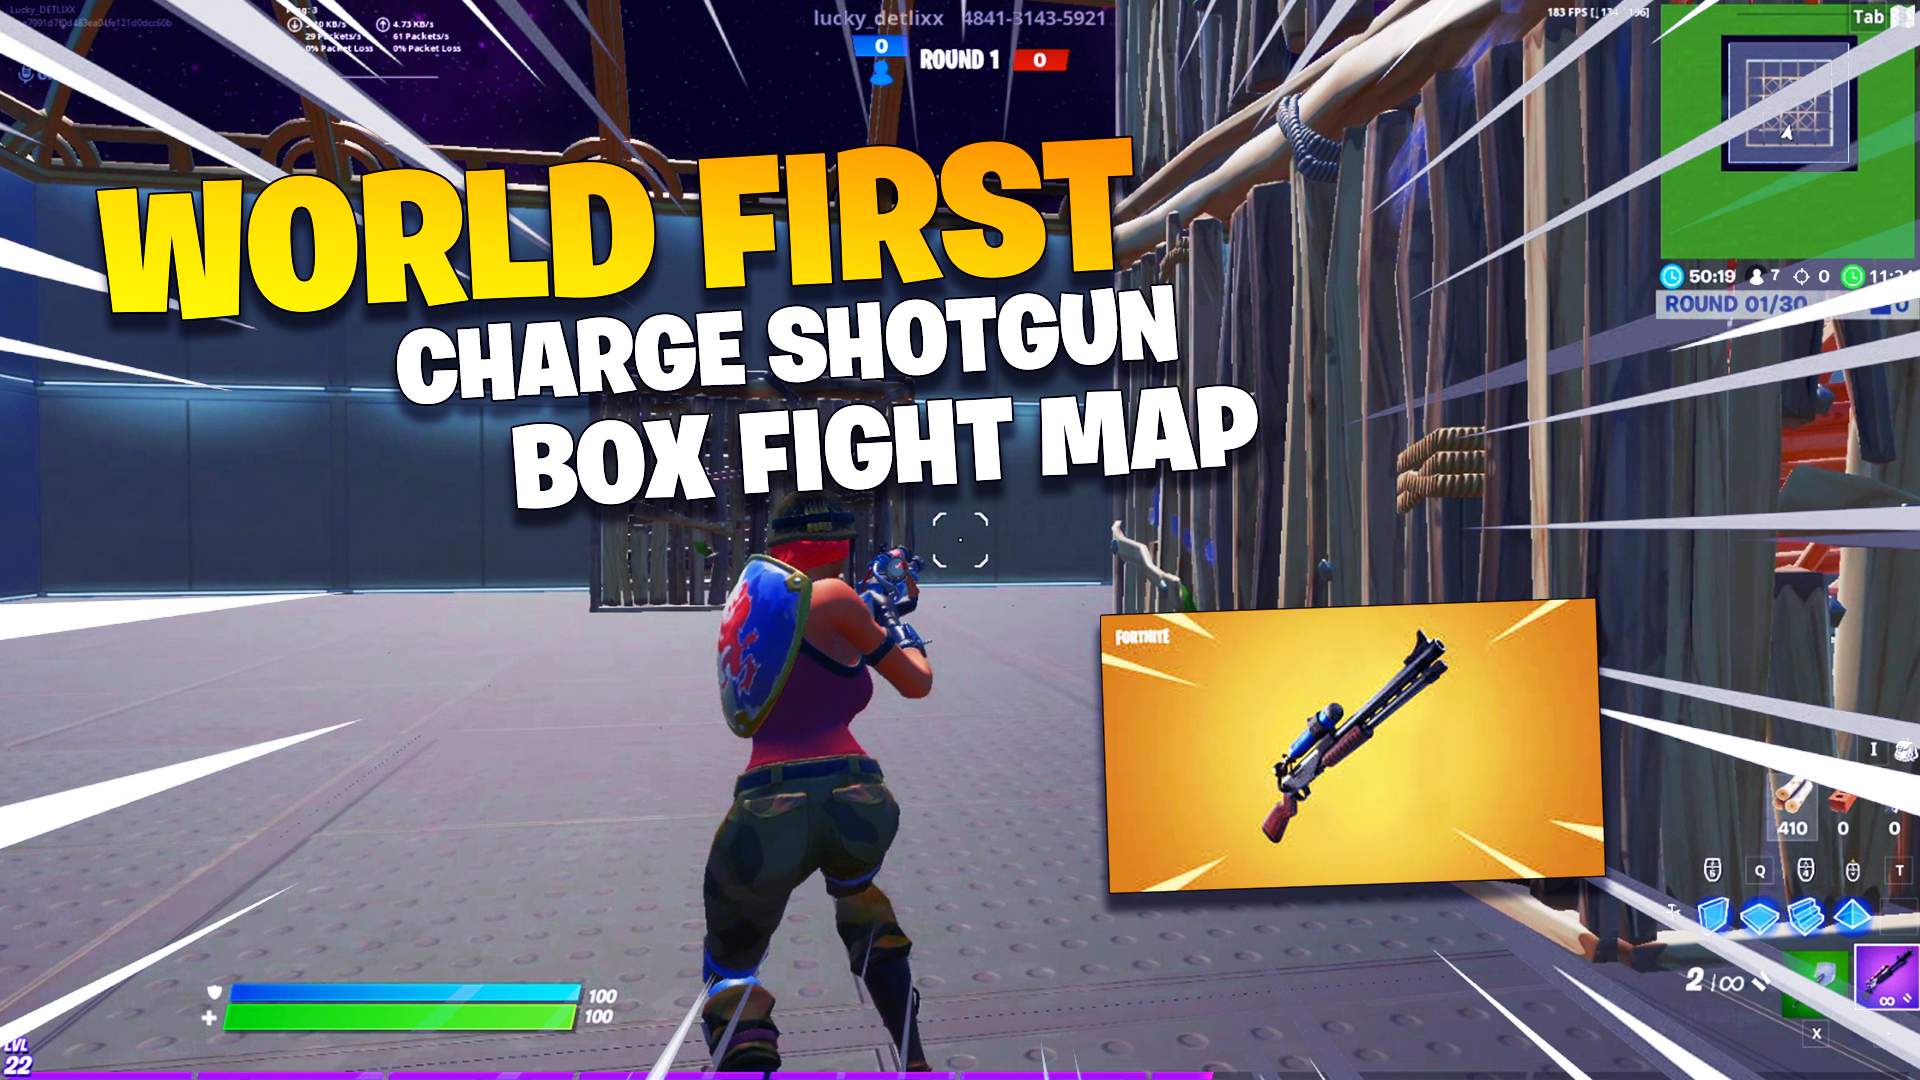 Updated Charge Shotgun Fortnite Creative Box Fights And 1v1 Map Code